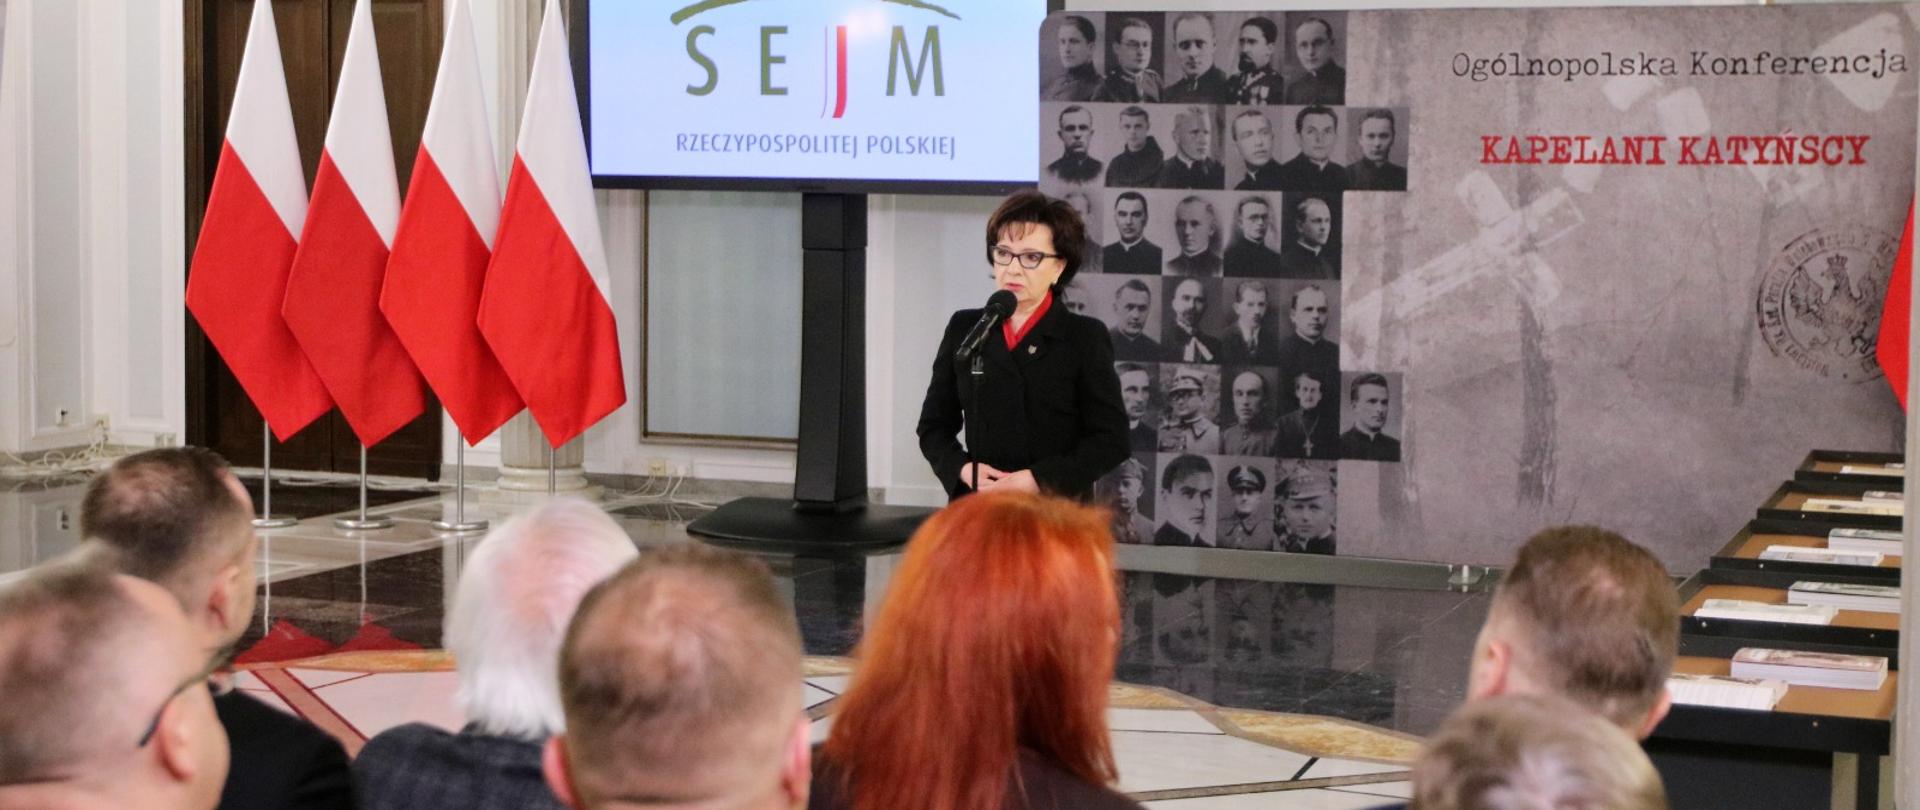 Z przodu sali stoi duży monitor z napisem Sejm, obok niego kobieta w czarnej marynarce mówi do mikrofonu na stojaku, za nią ścianka z napisem Kapelani katyńscy, przed nią na ustawionych w rzędy krzesłach siedzą ludzie.